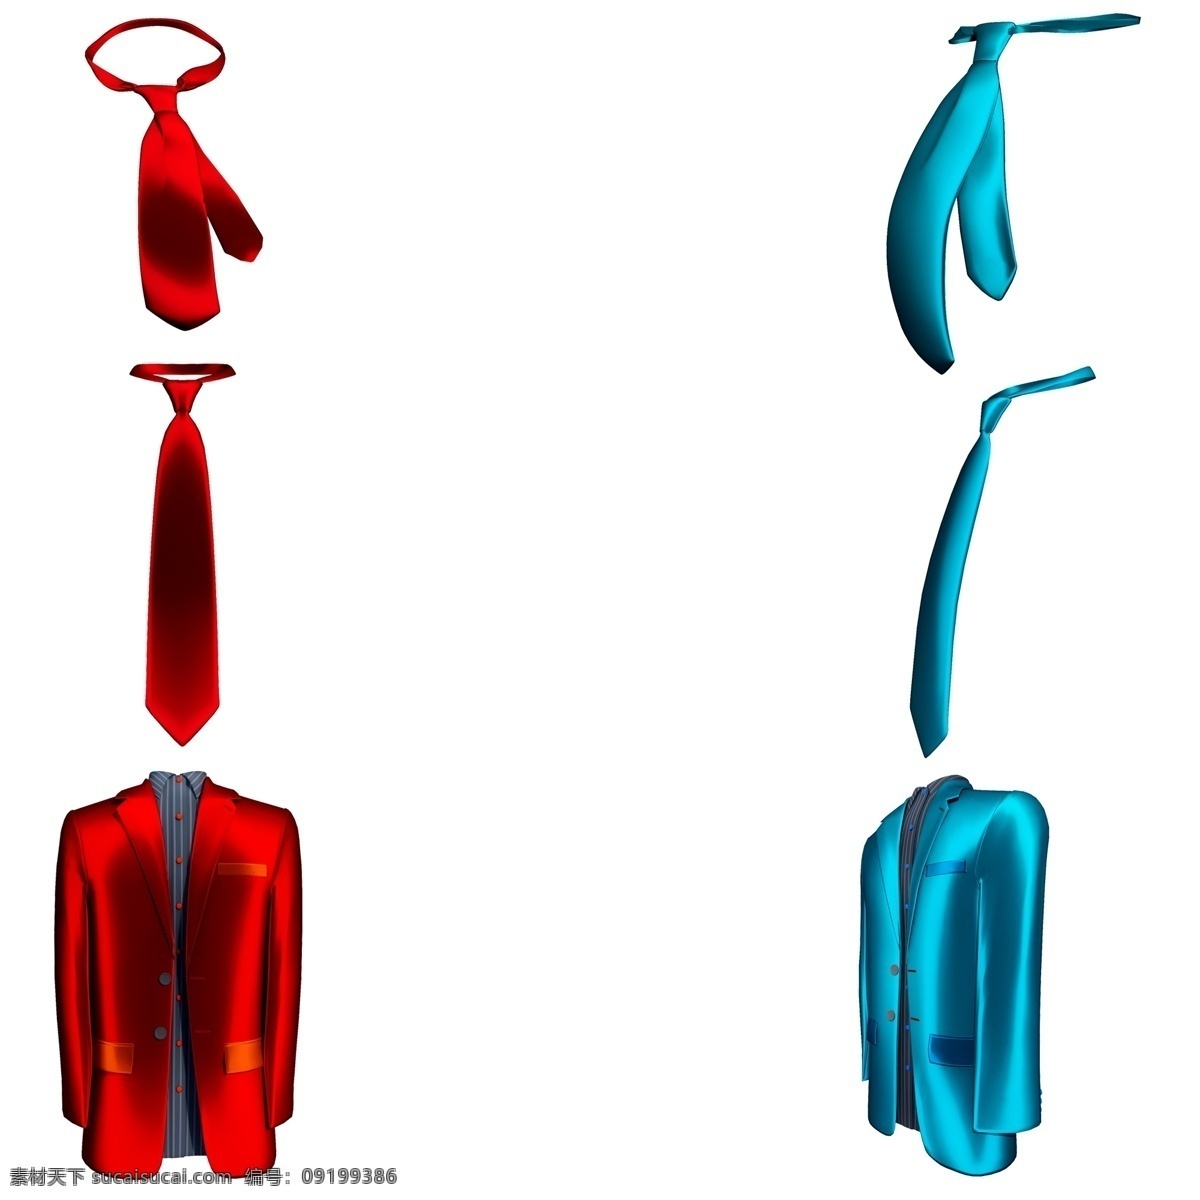 立体 质感 丝绸 西装 领带 套 图 仿真 3d 绸质 光滑 父亲节 礼物 新装 创意 套图 png图